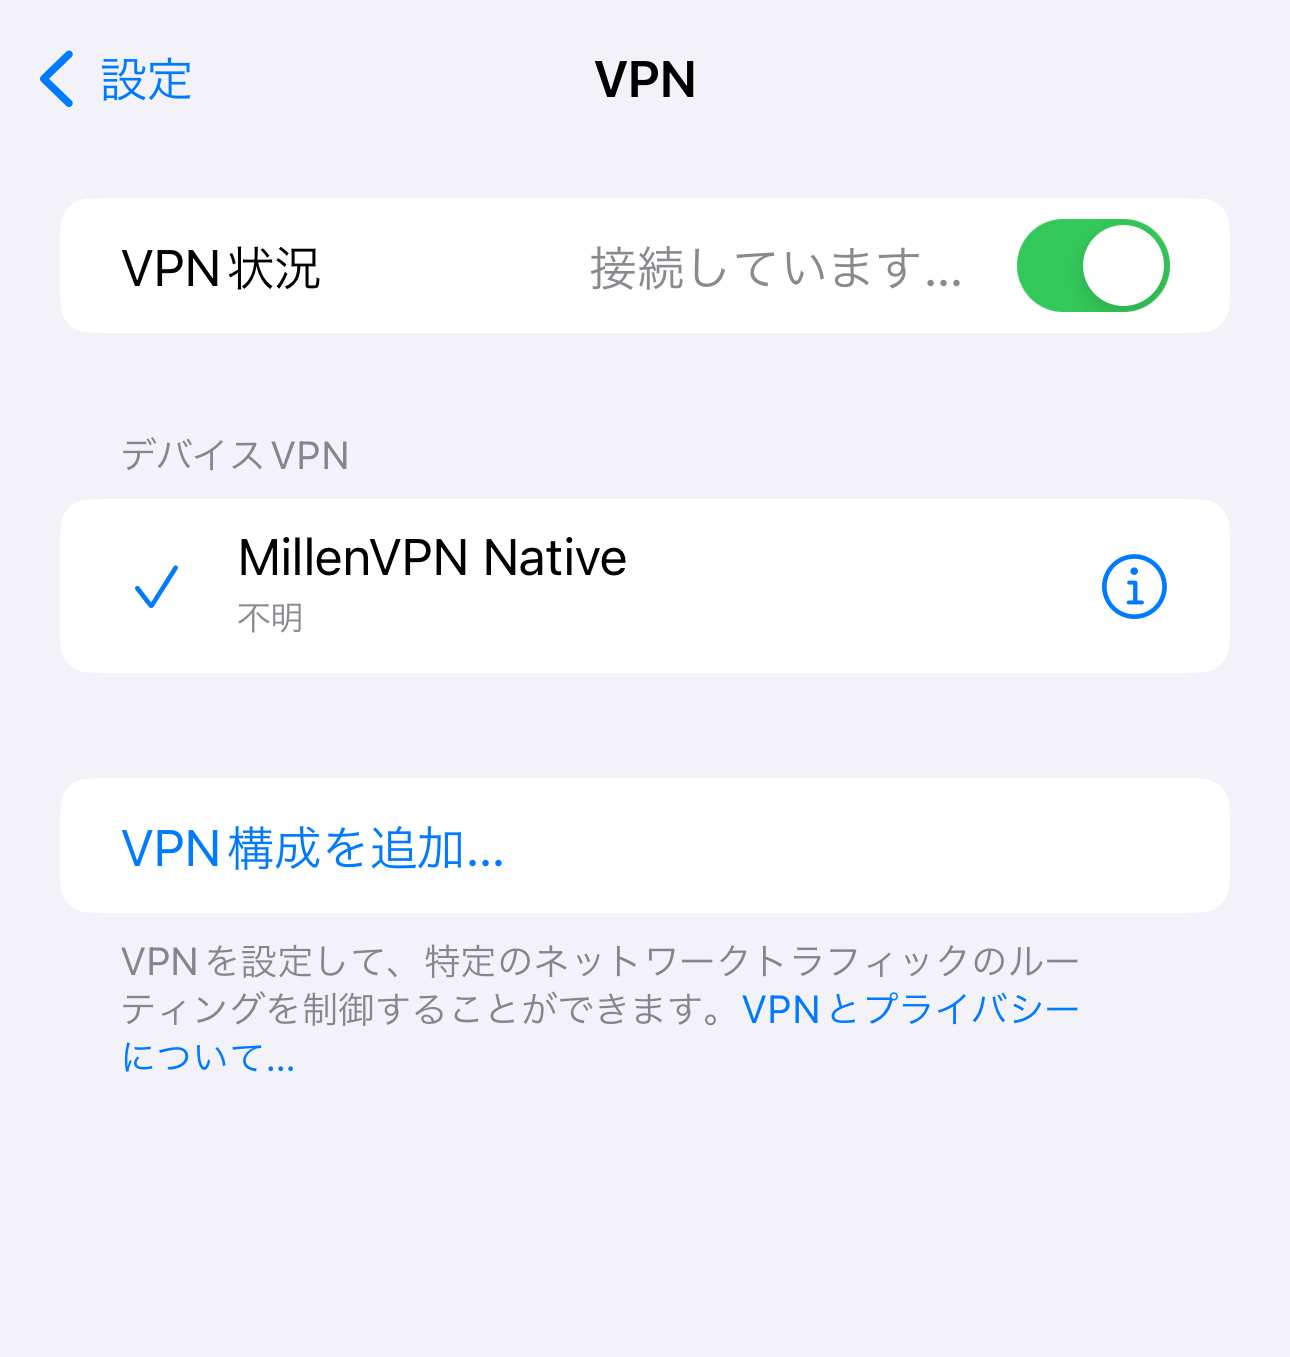 MillenVPN Nativeは中国から繋がらない